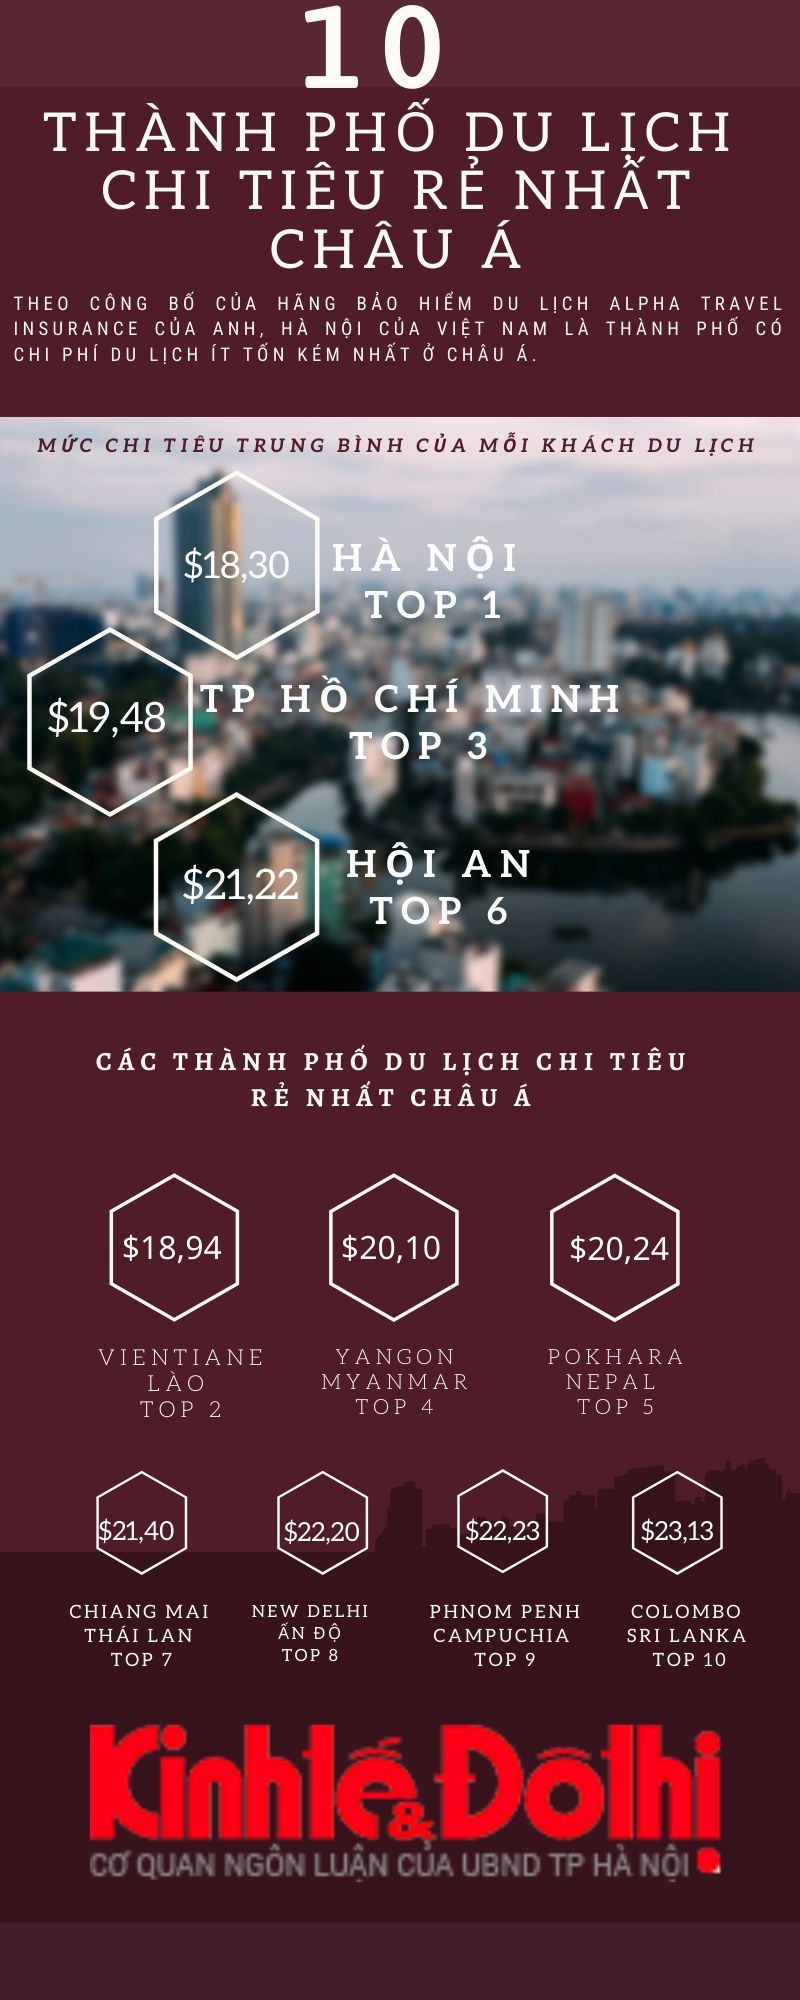 [Infographic] Hà Nội - Thành phố có chi phí du lịch ít tốn kém nhất ở châu Á - Ảnh 1